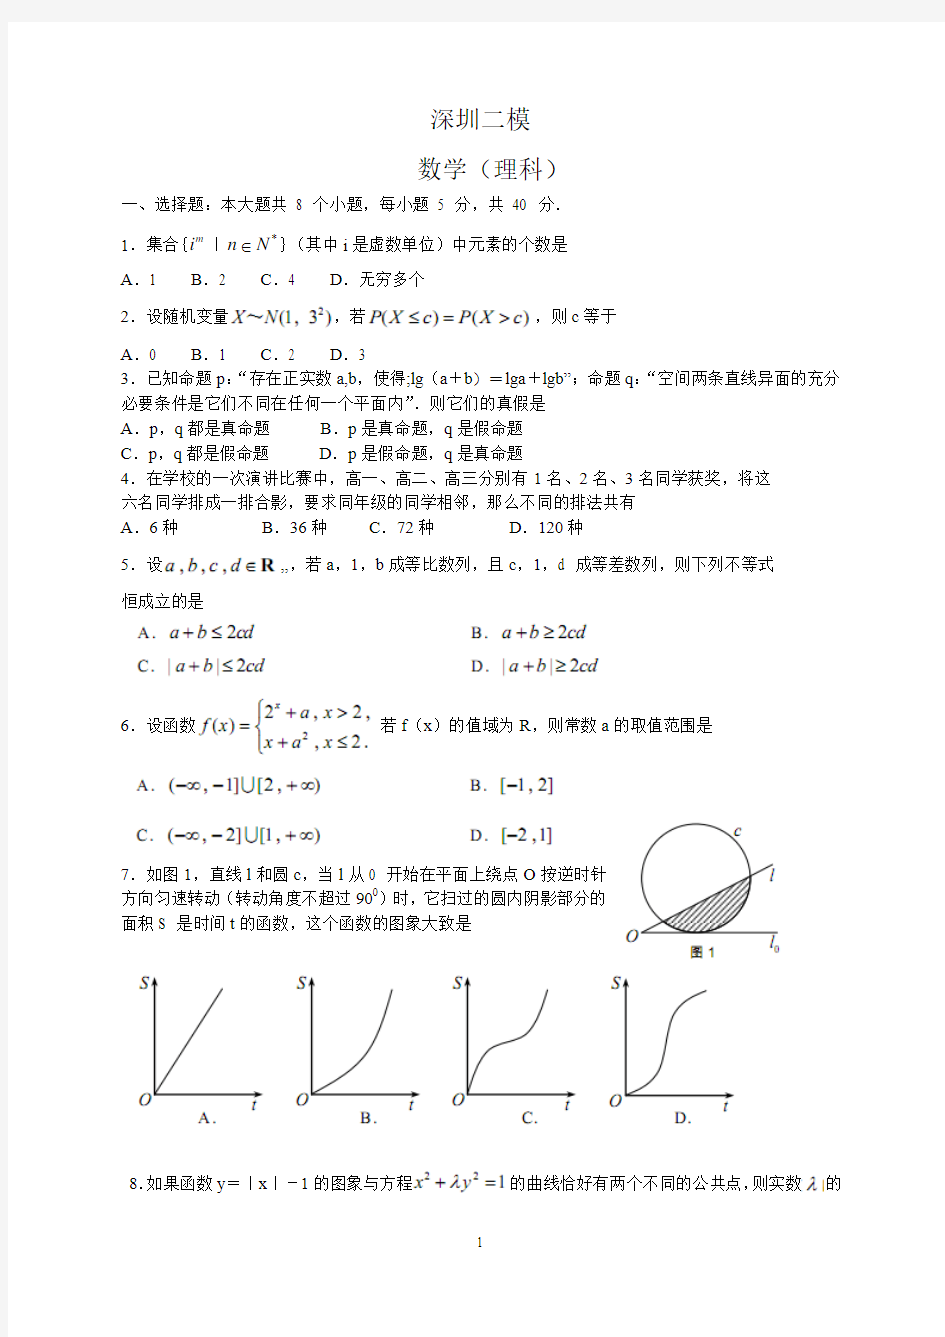 深圳二模 理科数学